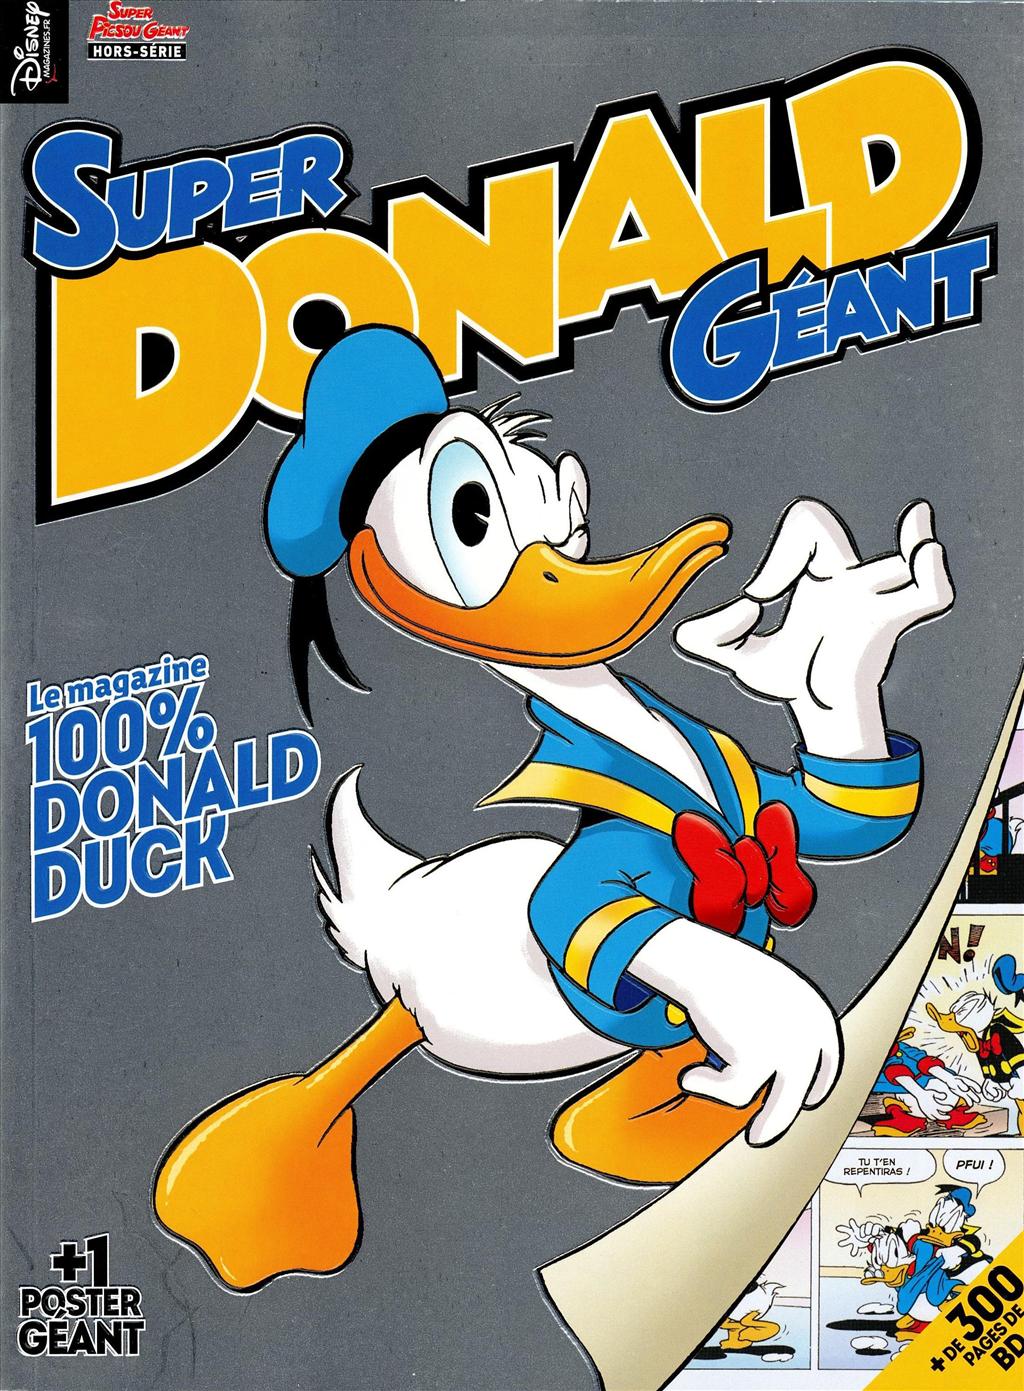 Super Donald géant